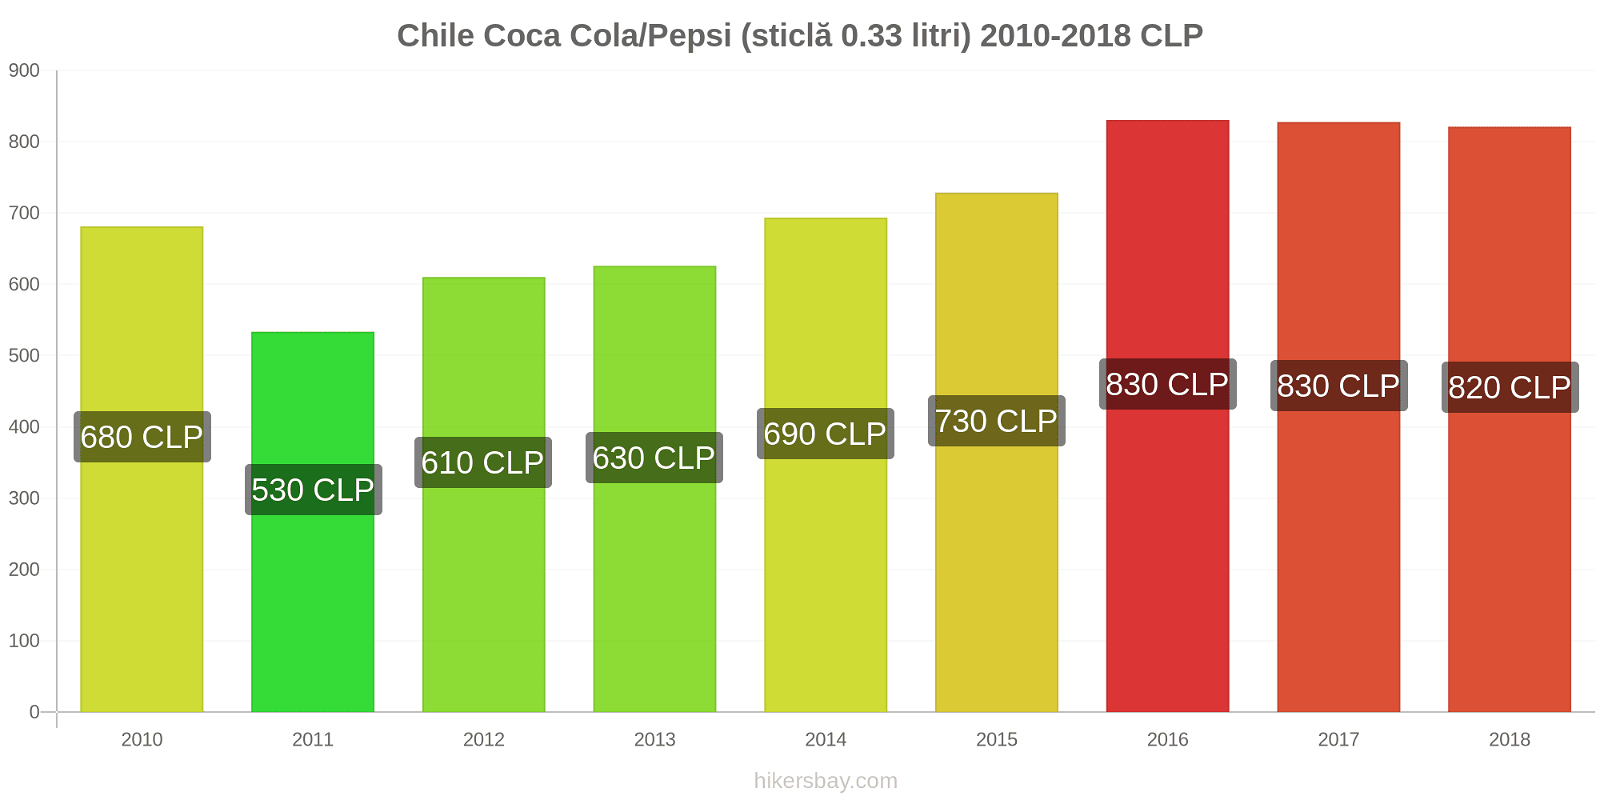 Chile schimbări de prețuri Coca-Cola/Pepsi (sticlă de 0.33 litri) hikersbay.com